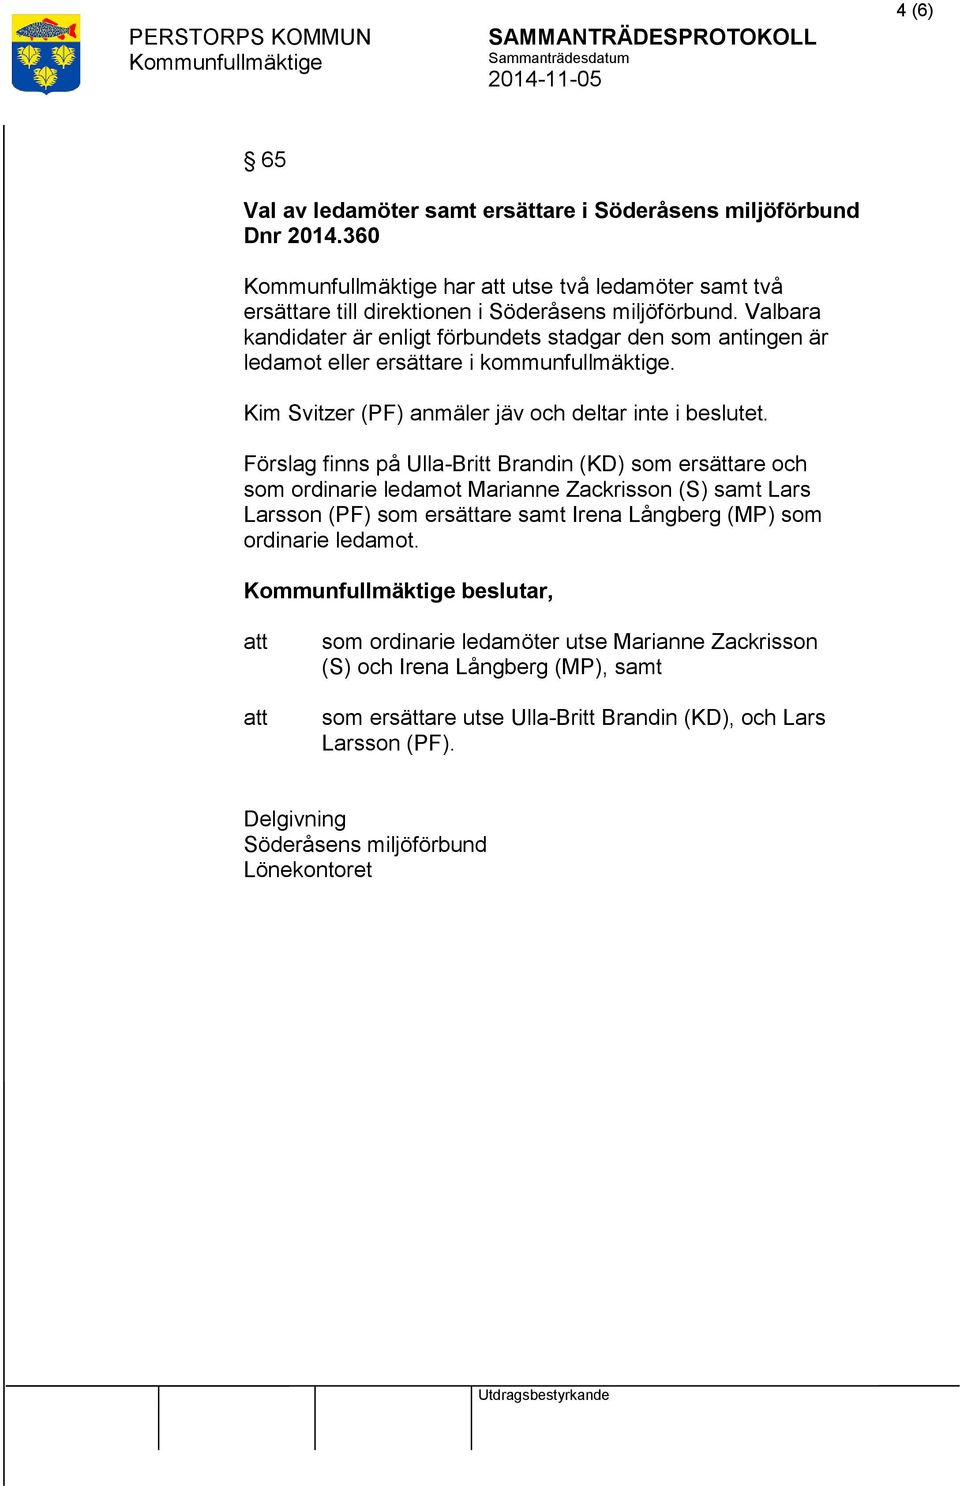 Förslag finns på Ulla-Britt Brandin (KD) som ersättare och som ordinarie ledamot Marianne Zackrisson (S) samt Lars Larsson (PF) som ersättare samt Irena Långberg (MP) som